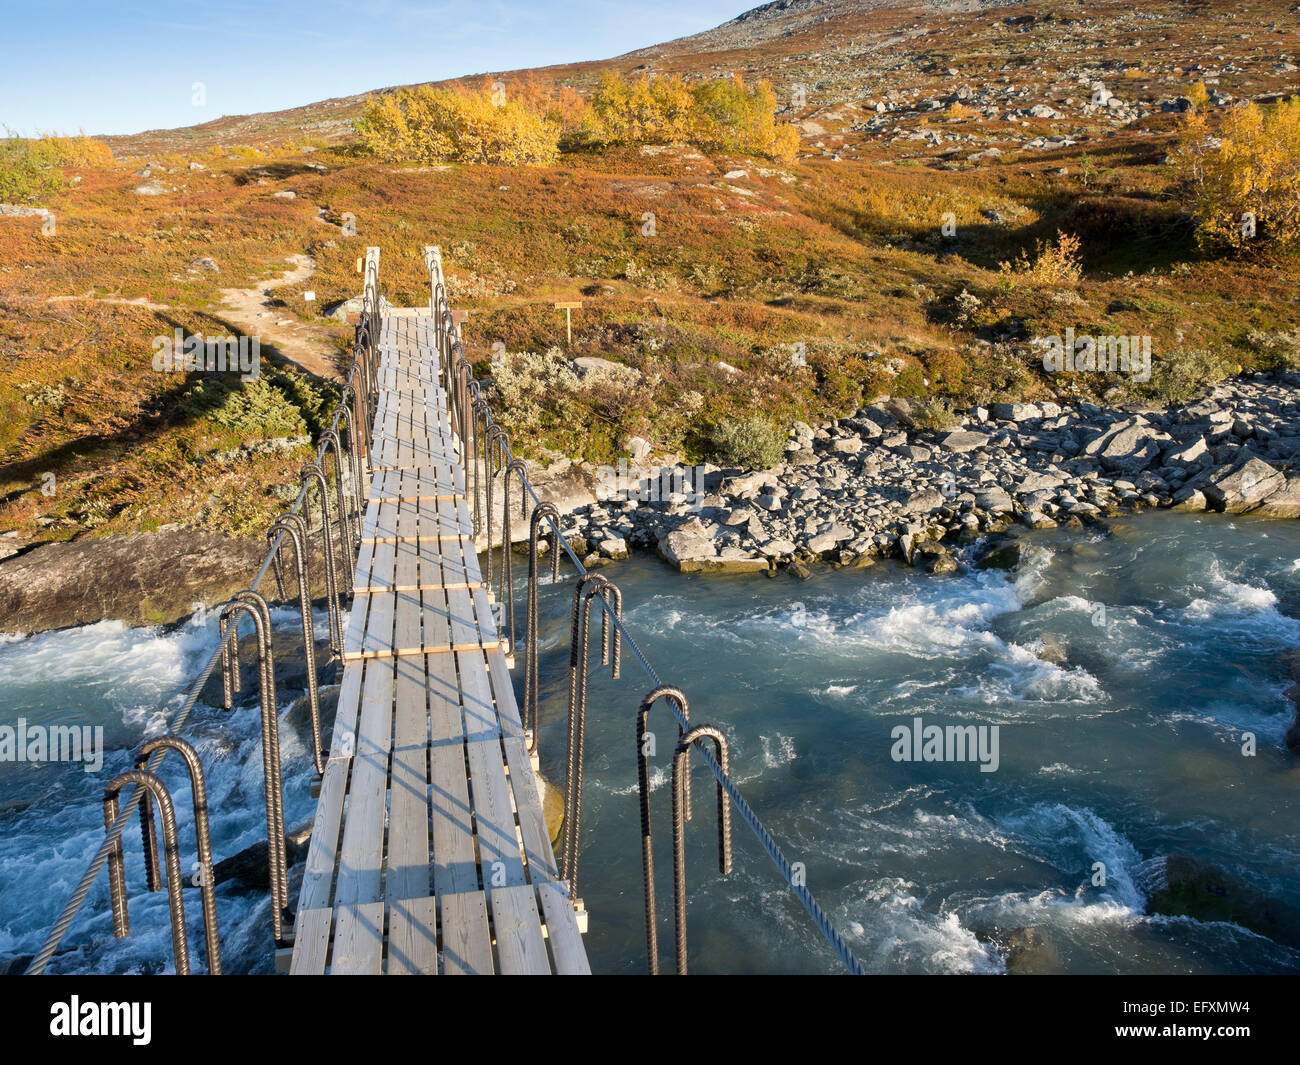 Puente de cuerdas, cordillera Strynefjell, otoño, verano indio, ruta de senderismo Foto de stock